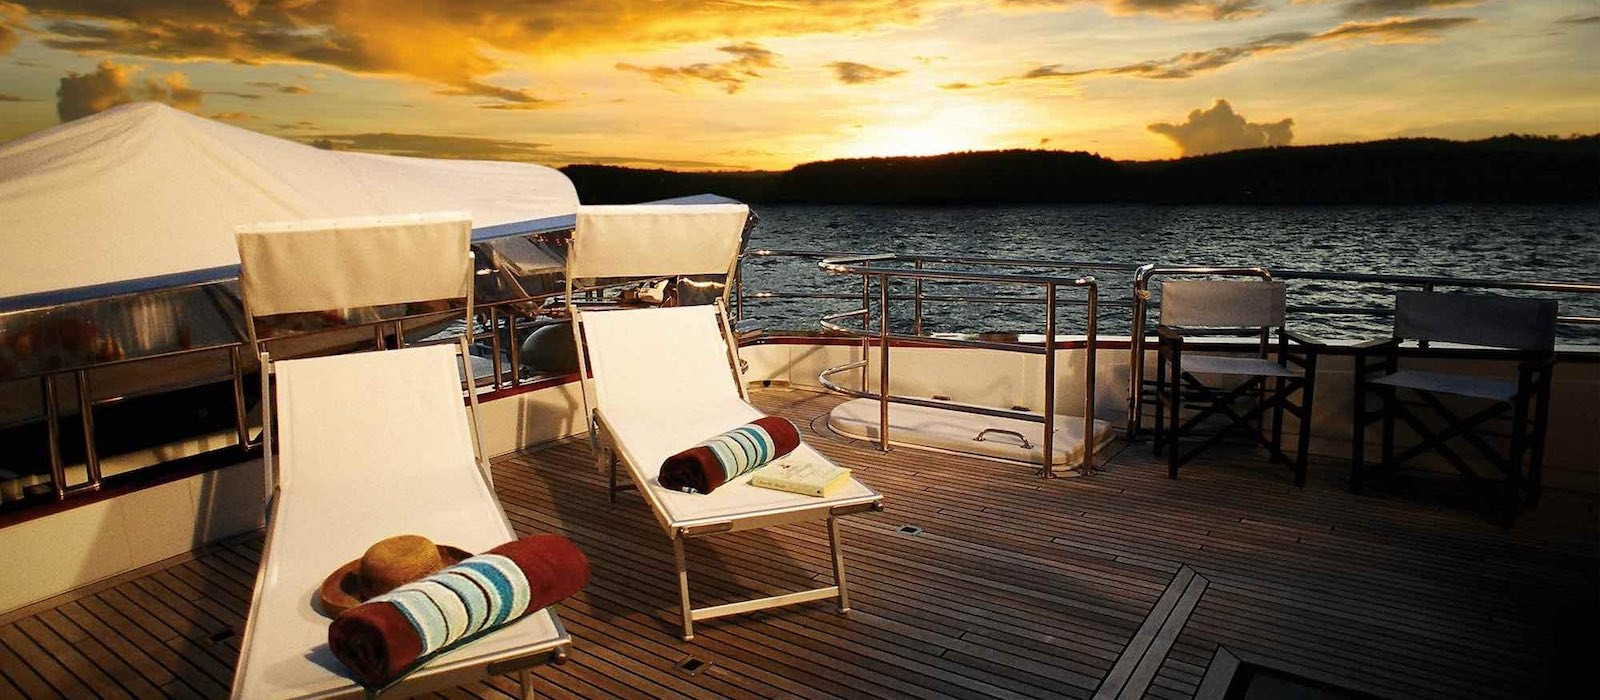 Sun setting on Galaxy I luxury boat hire Whitsundays